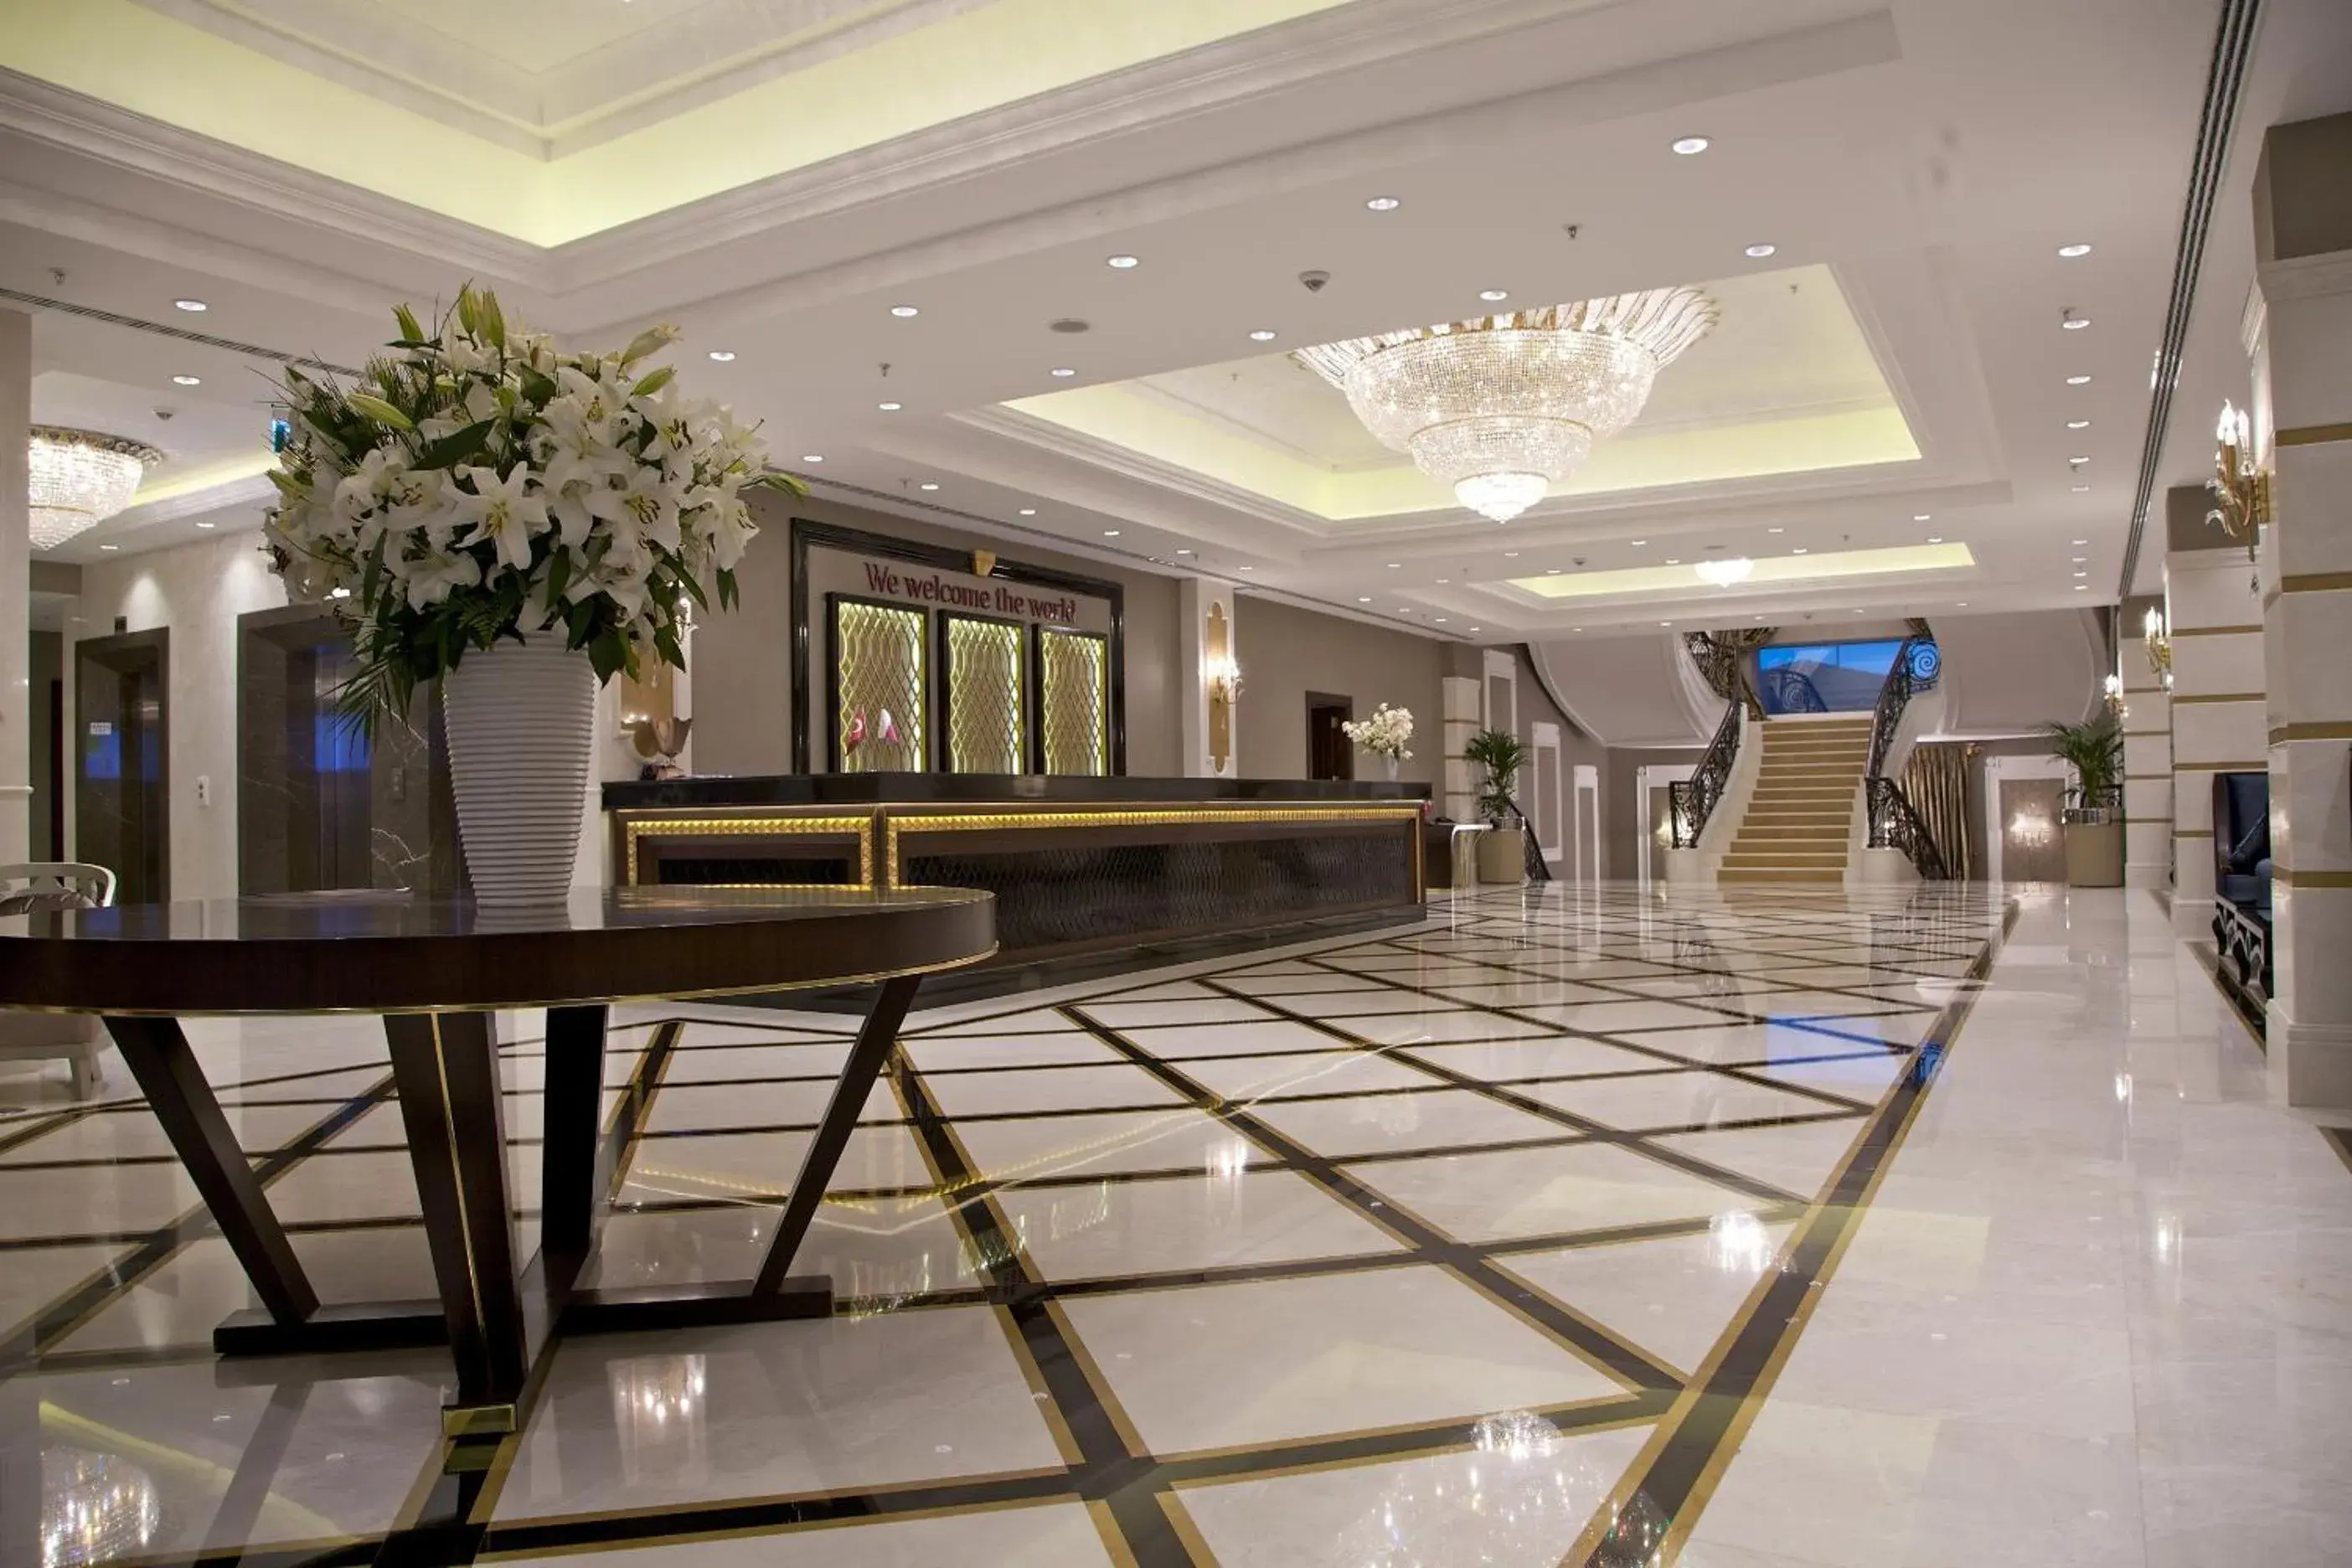 Lobby or reception, Lobby/Reception in Retaj Royale Istanbul